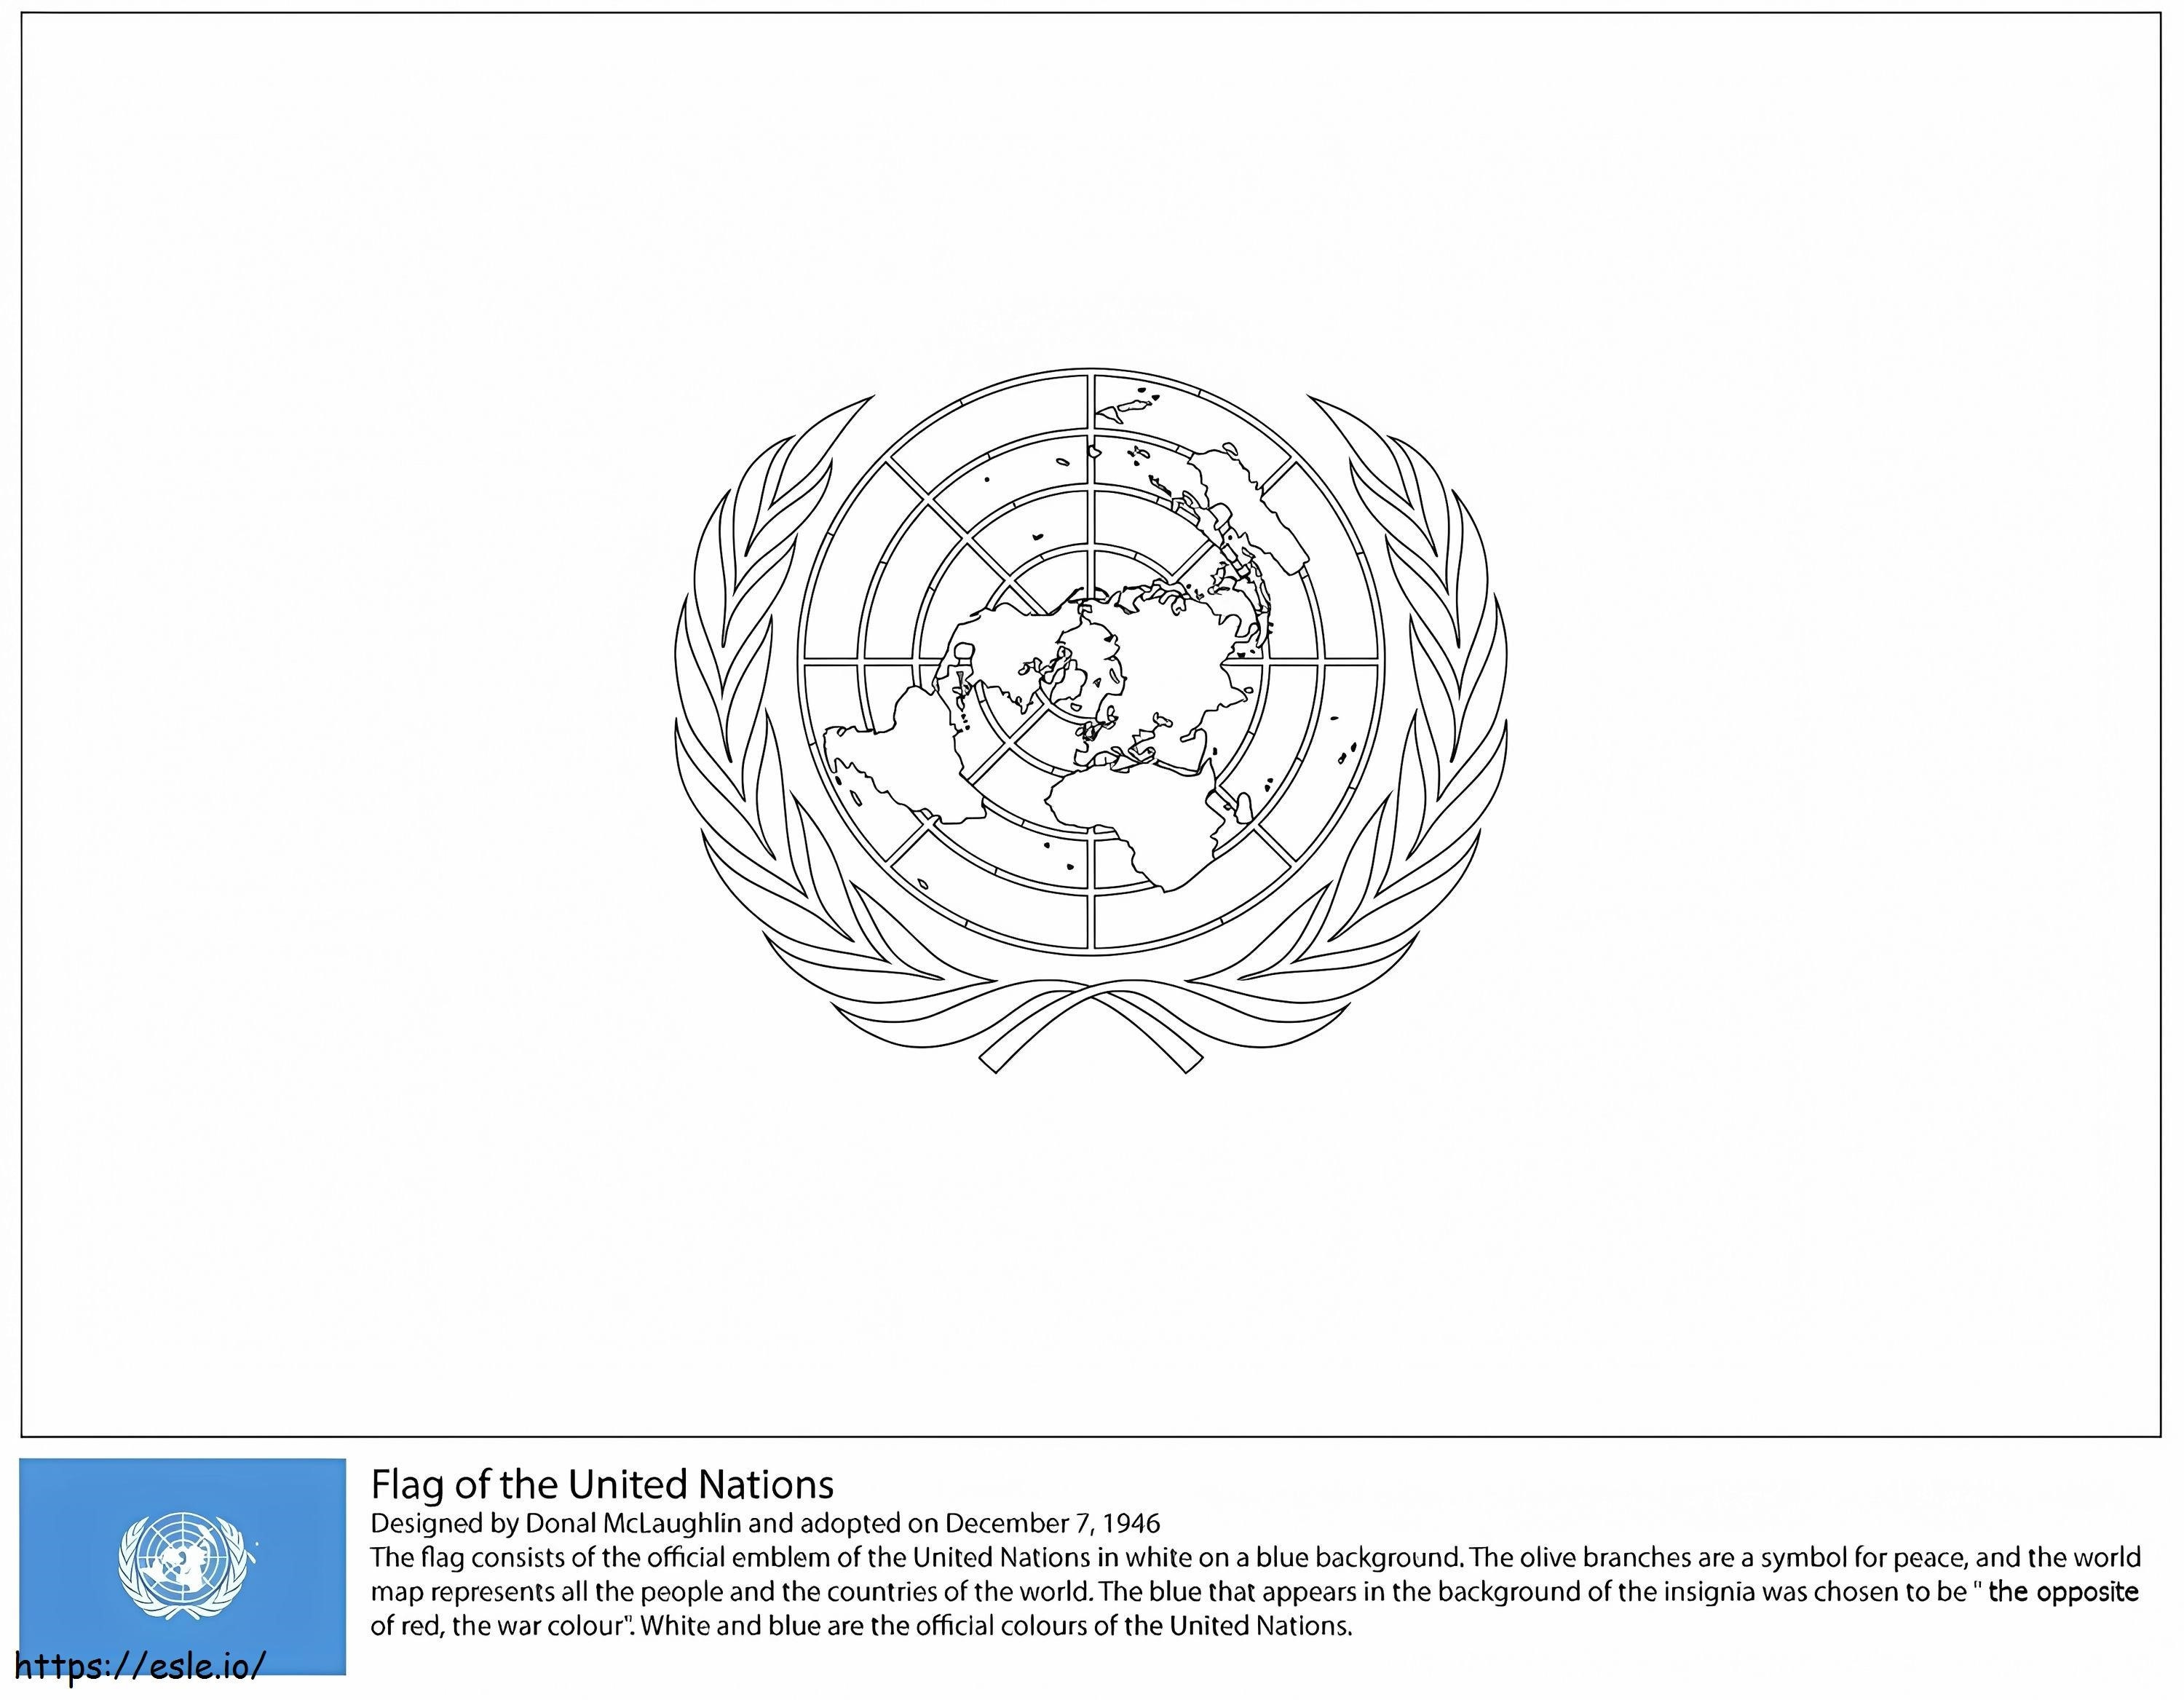  Flaga Organizacji Narodów Zjednoczonych kolorowanka